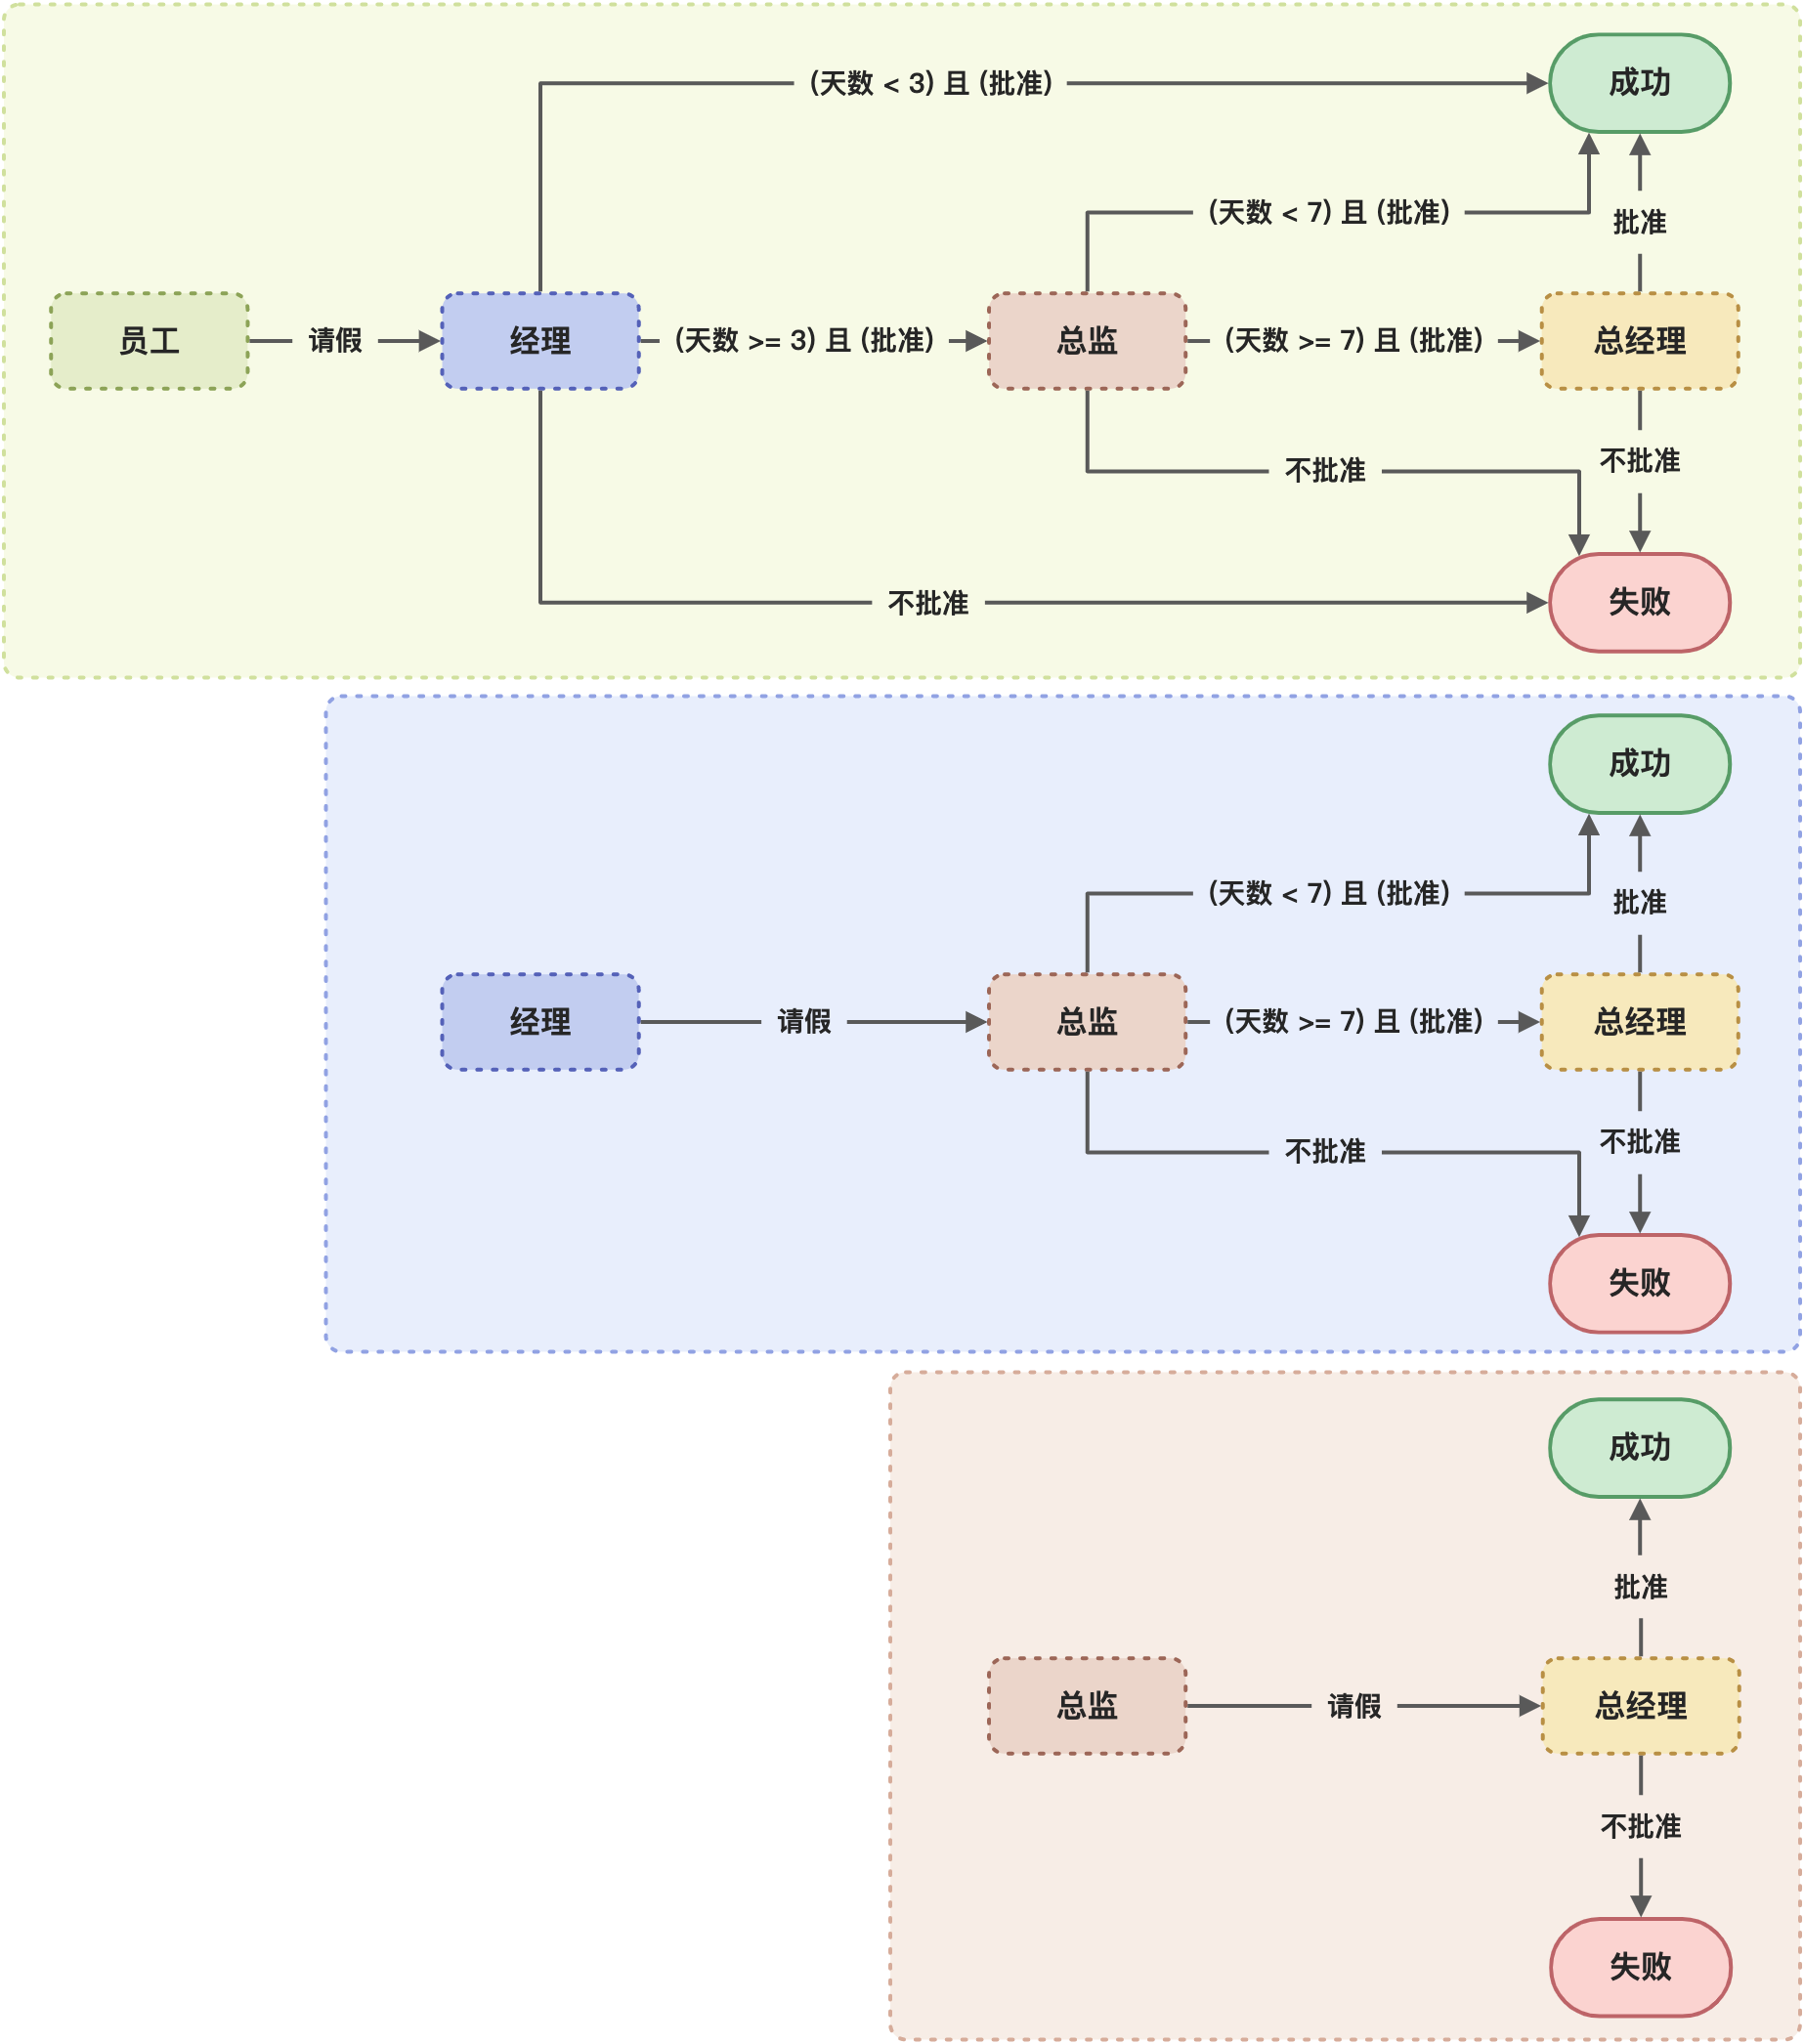 责任链模式 - 逻辑架构图.jpg